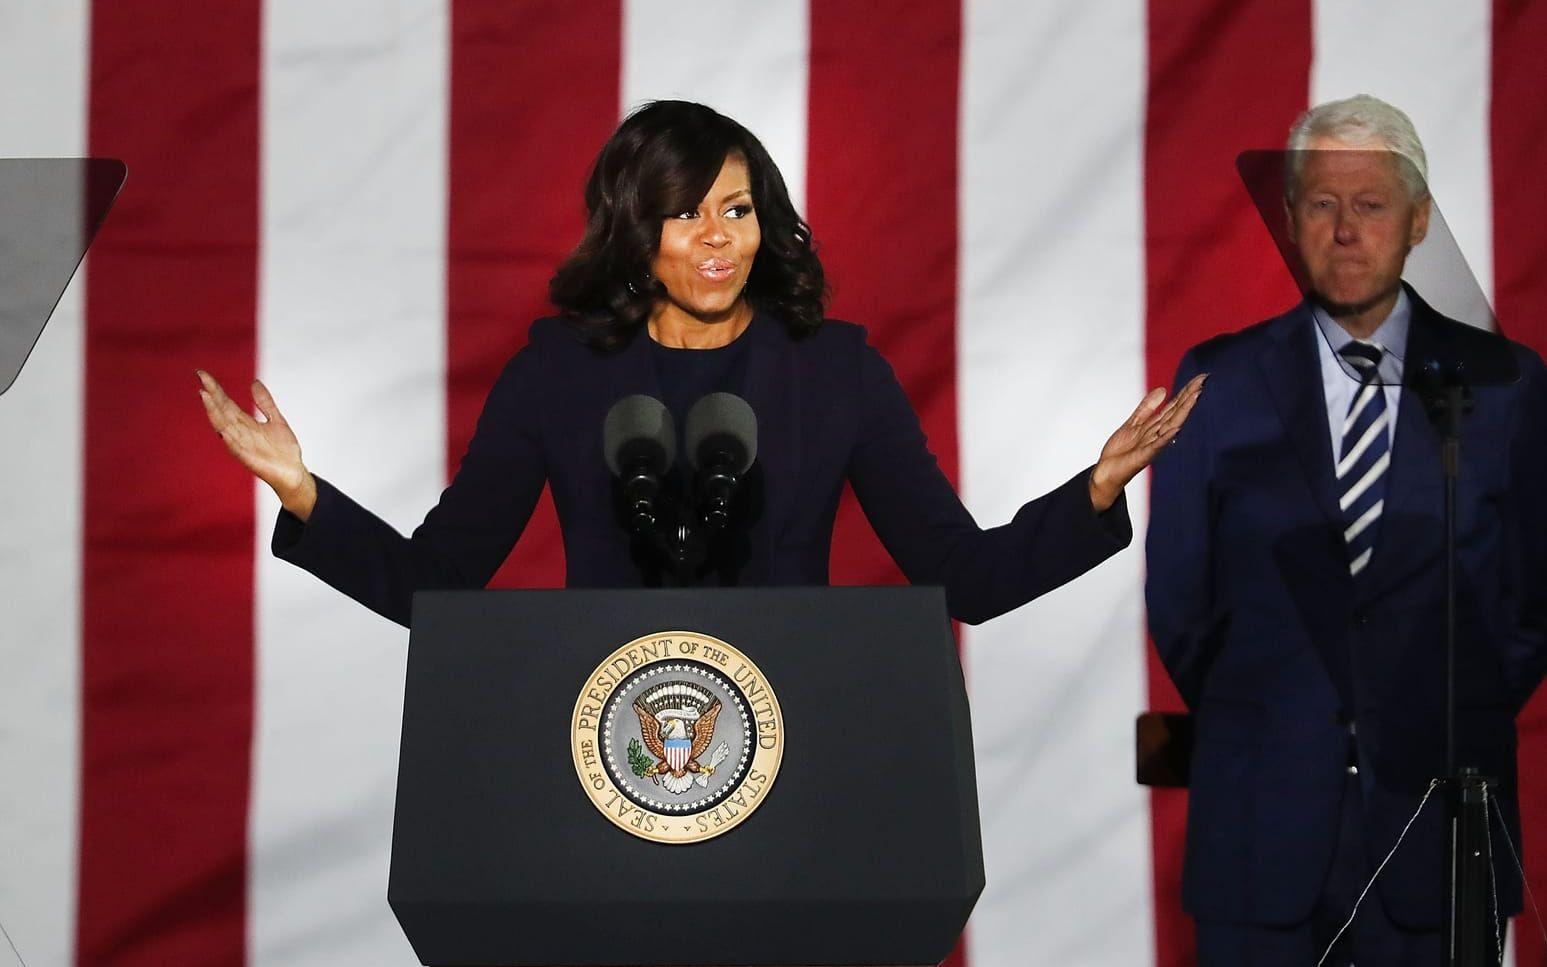 First lady Michelle Obama talade under måndagens valmöte i Philadelphia och tackade för hennes åtta år i Vita huset. Bild: TT/AP Photo